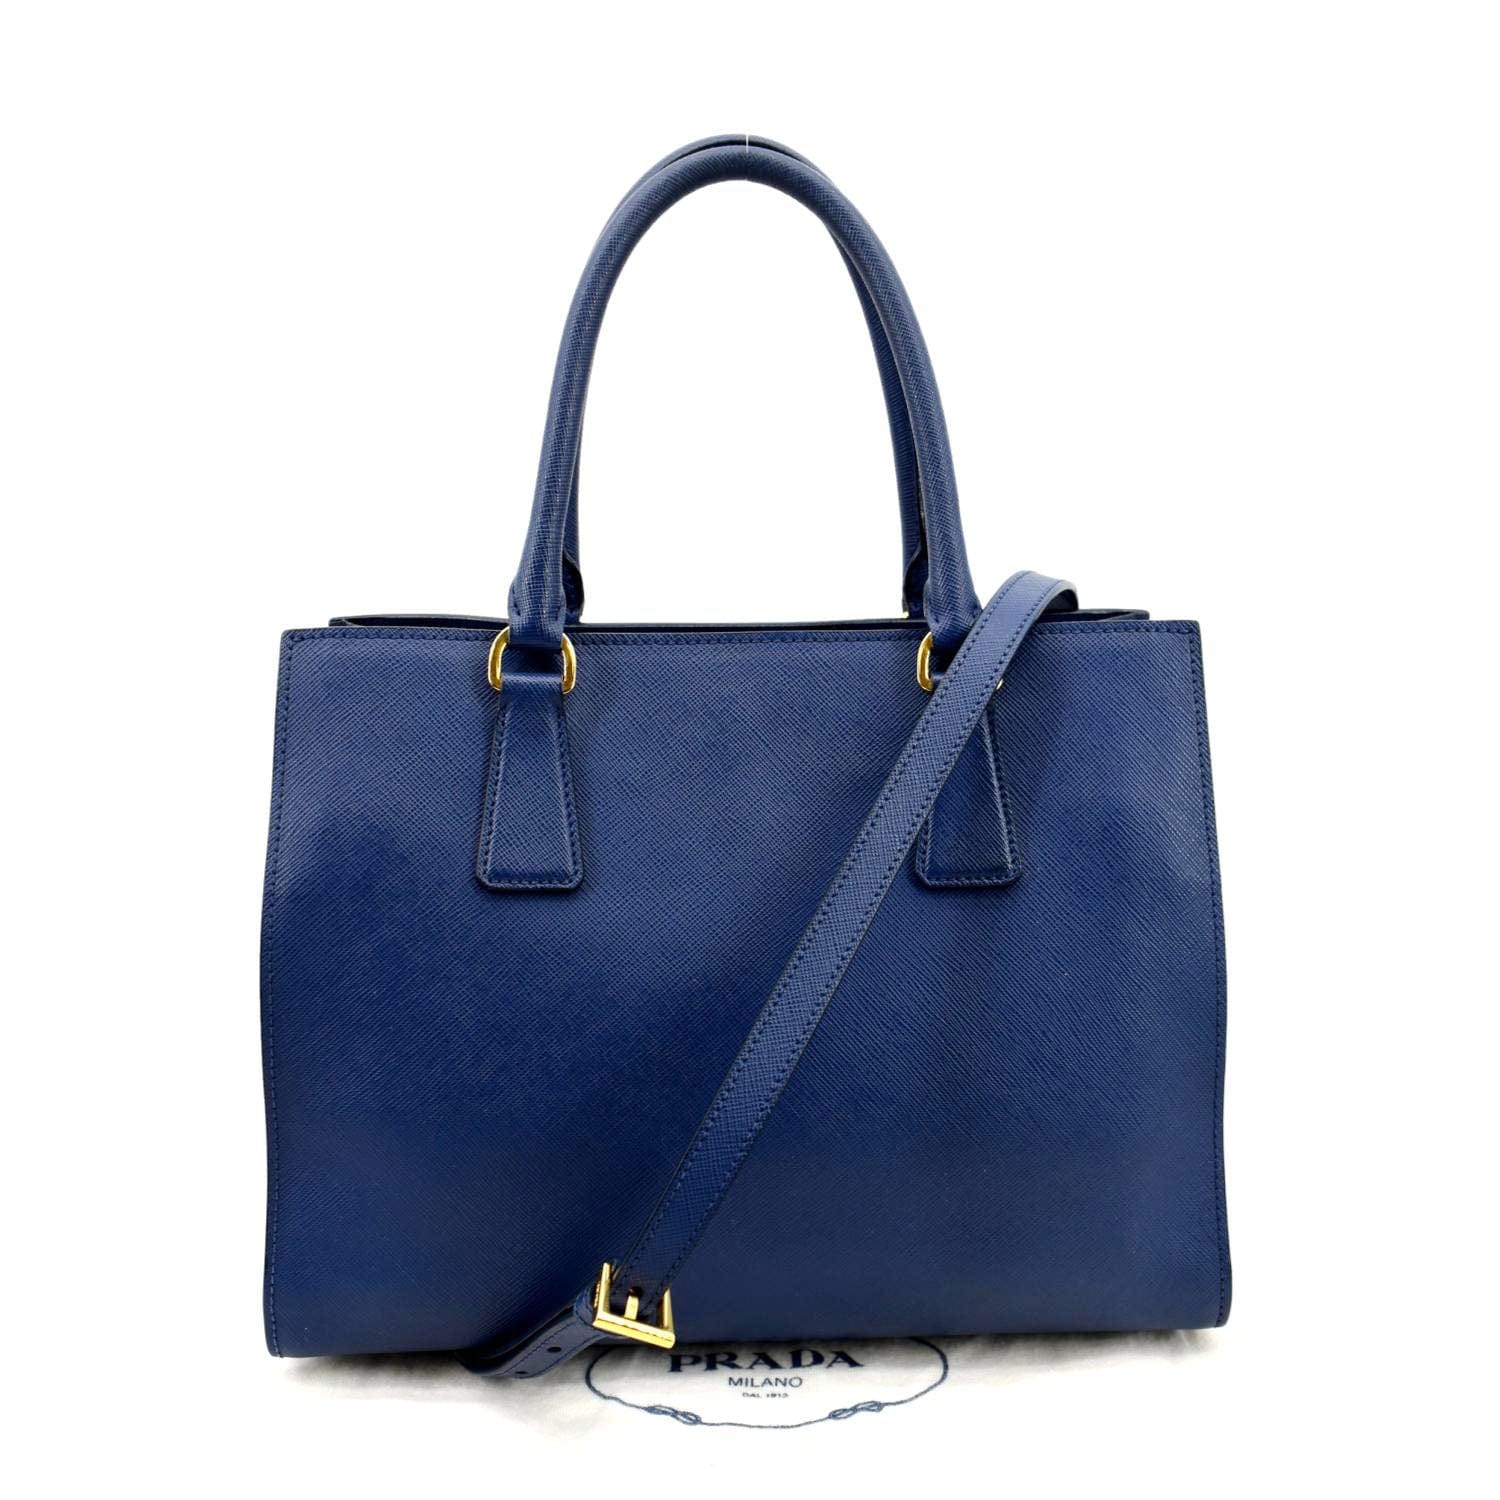 Prada Medium Galleria Saffiano Leather Bag - Blue